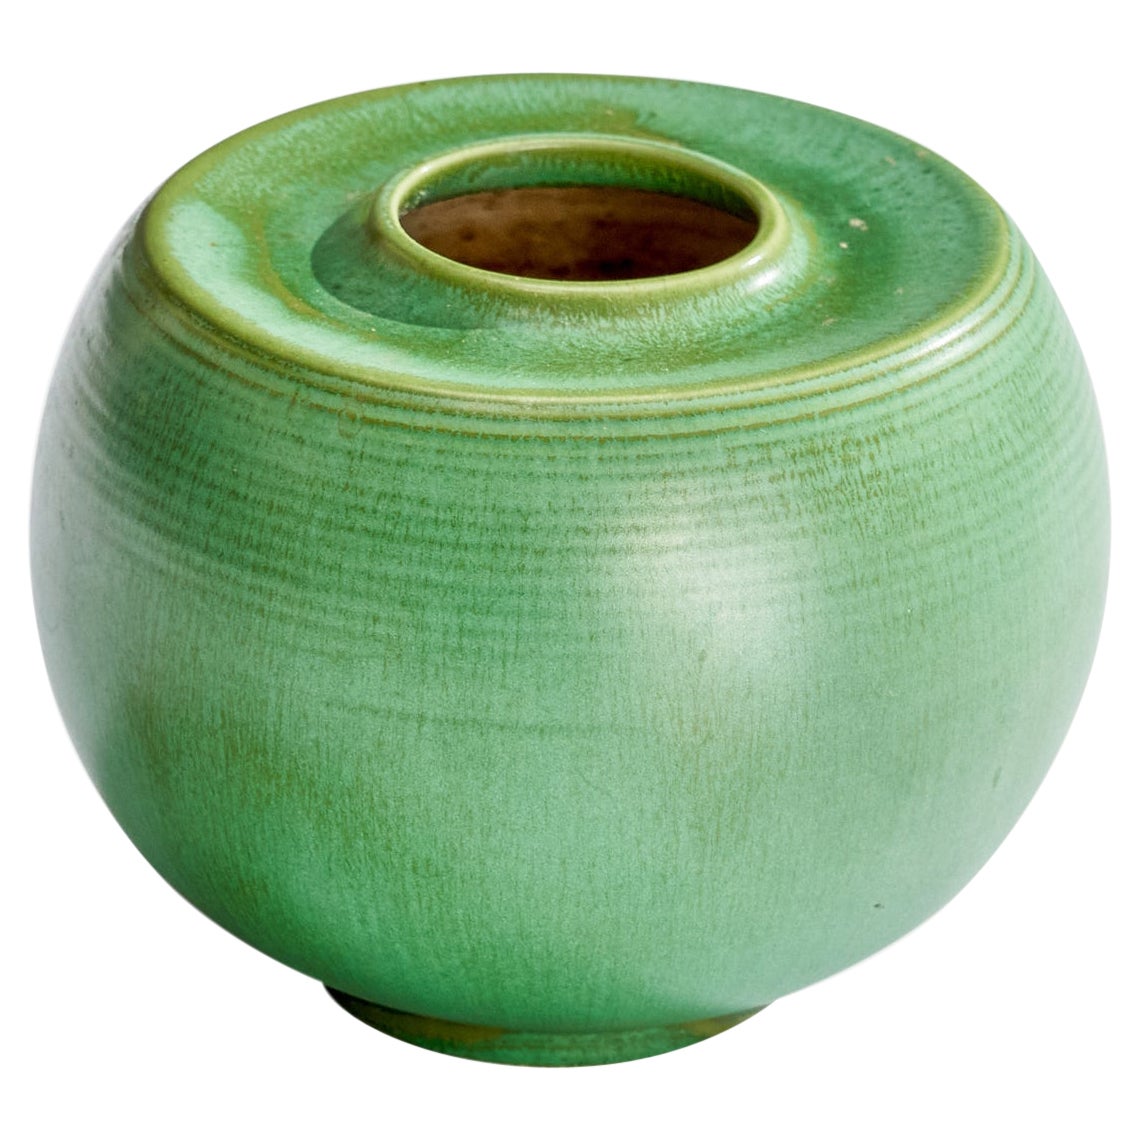 Arthur Percy, Vase, Keramik, Schweden, 1930er Jahre